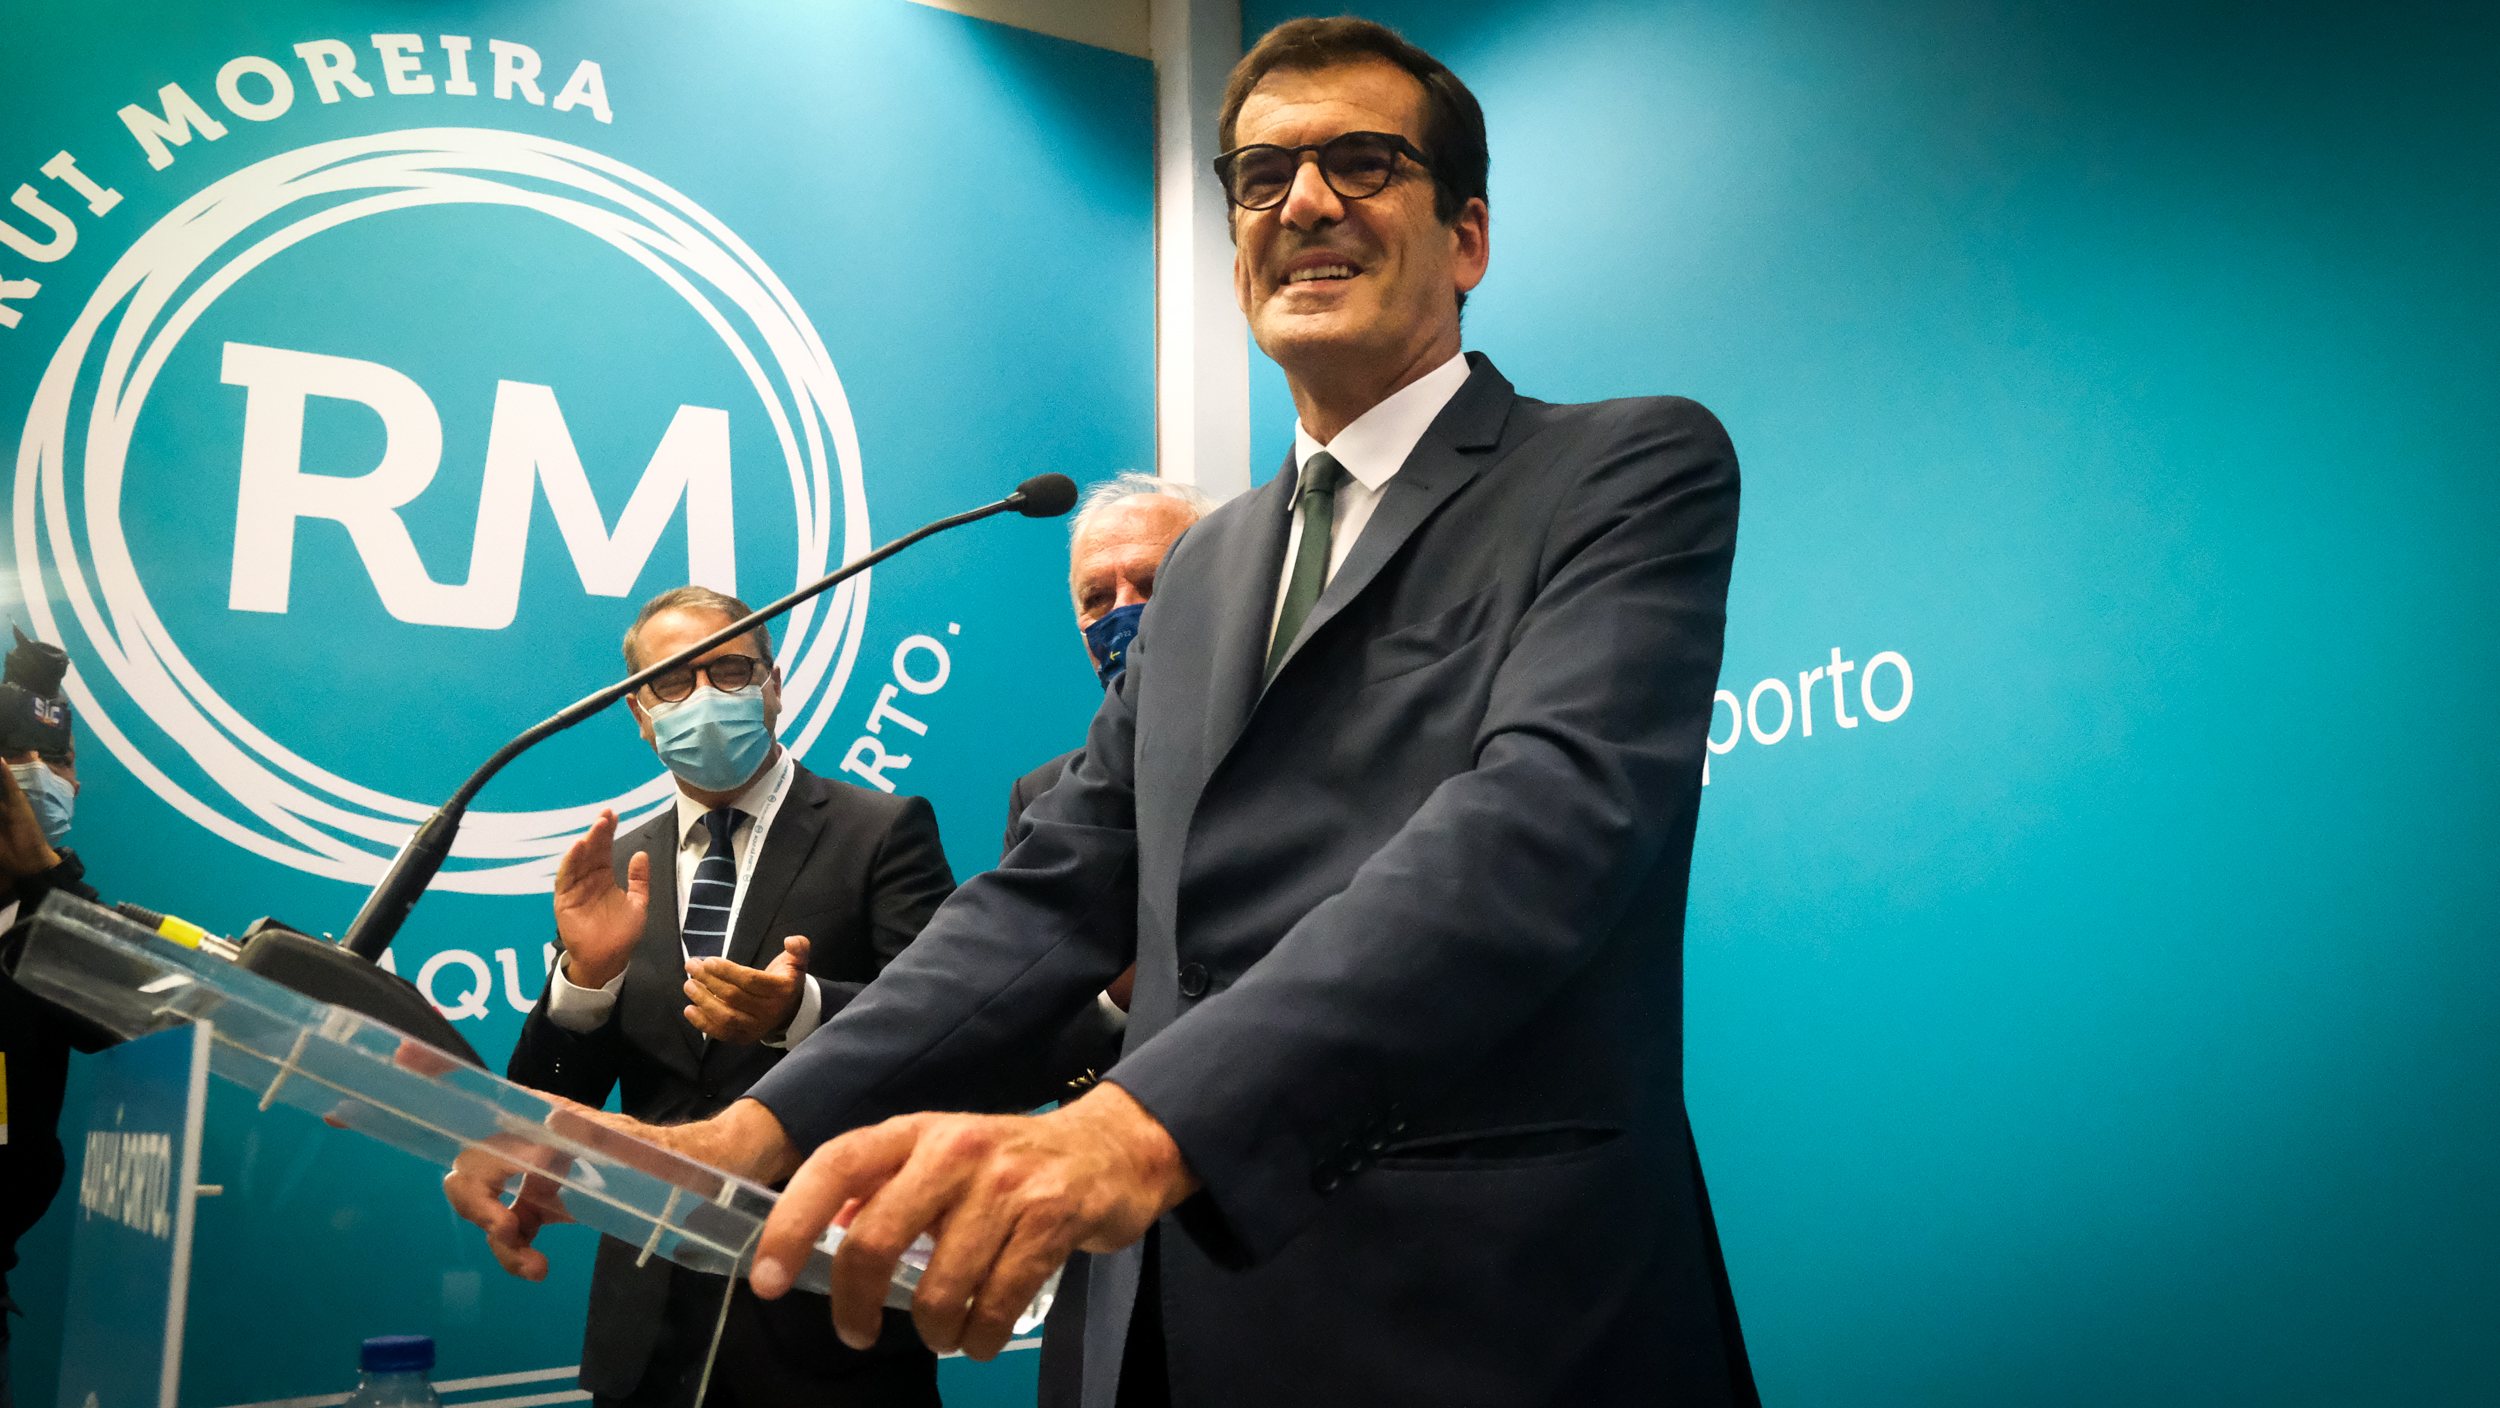 O movimento de Rui Moreira venceu as eleições autárquicas deste ano com 40,72% dos votos